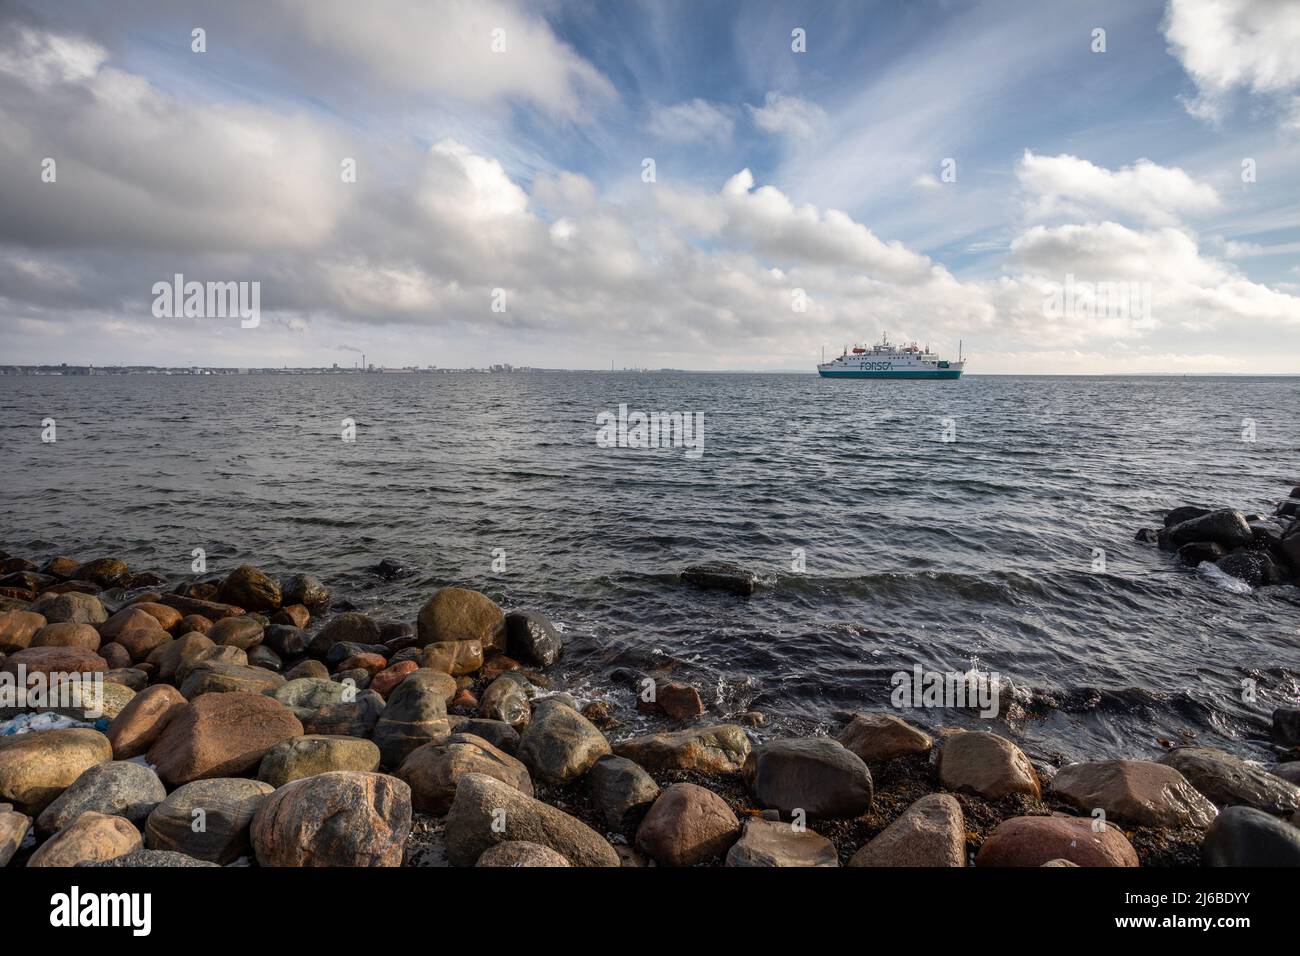 Traversée en ferry de Forsea sur la route de Helsingor Danemark à Helsingborg Suède en traversant la mer du Nord. Banque D'Images